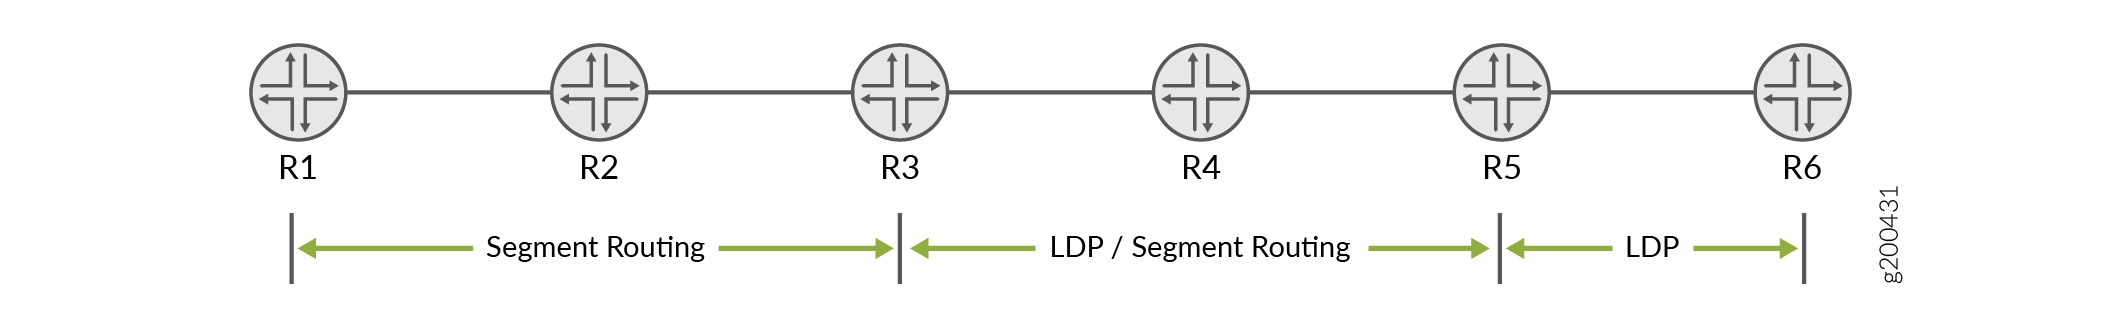 OSPF を使用した LDP とのセグメント ルーティングの相互運用性によるサンプル LDP トポロジー